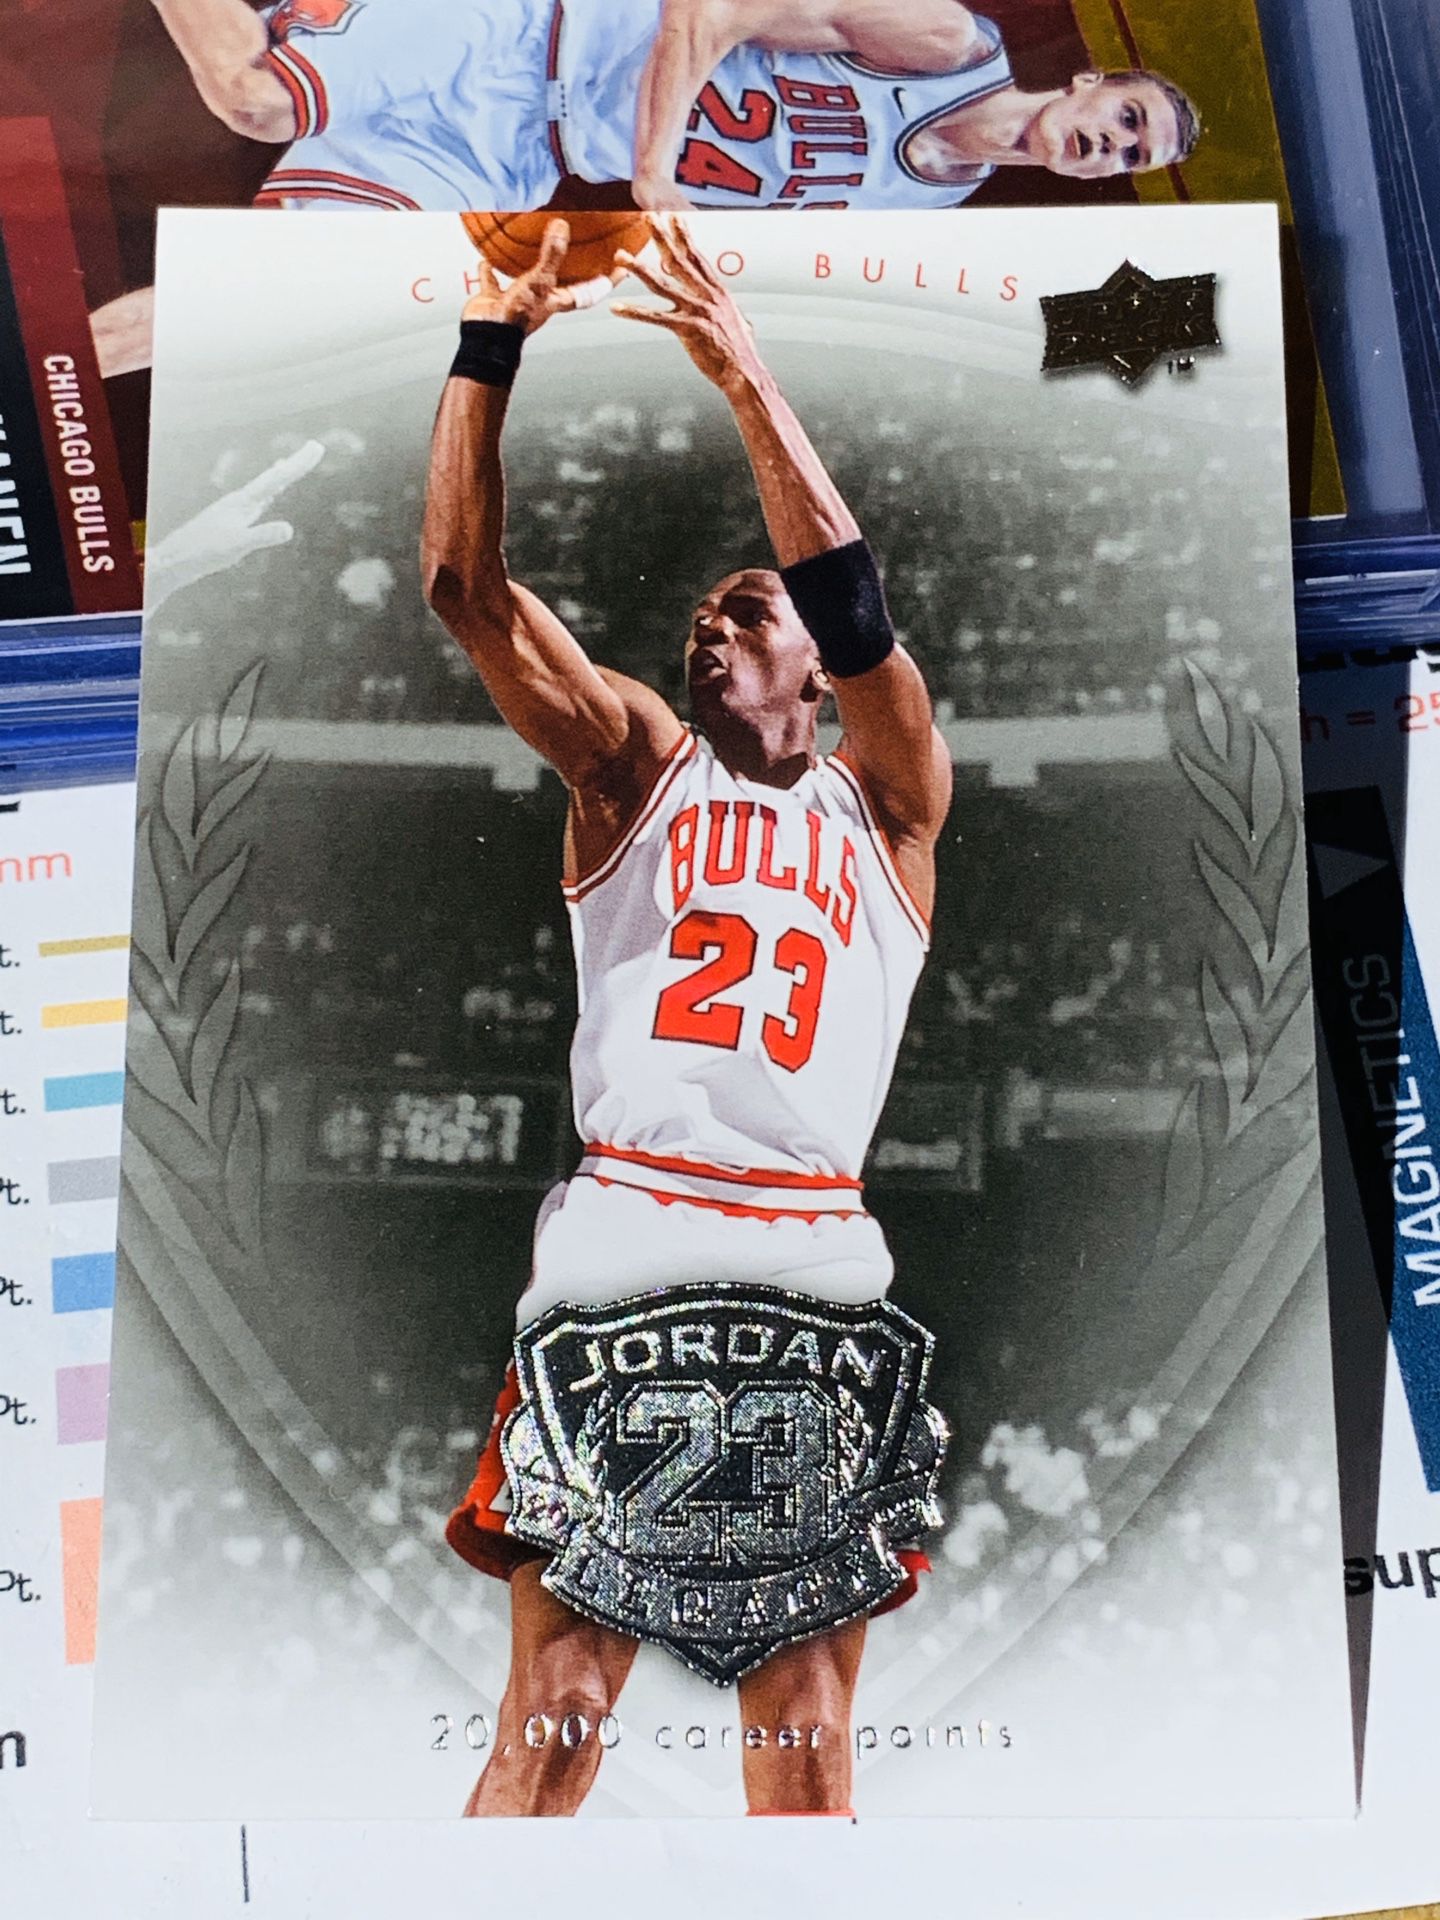 2009-2010 Upper Deck Michael Jordan Legacy Card No. 36